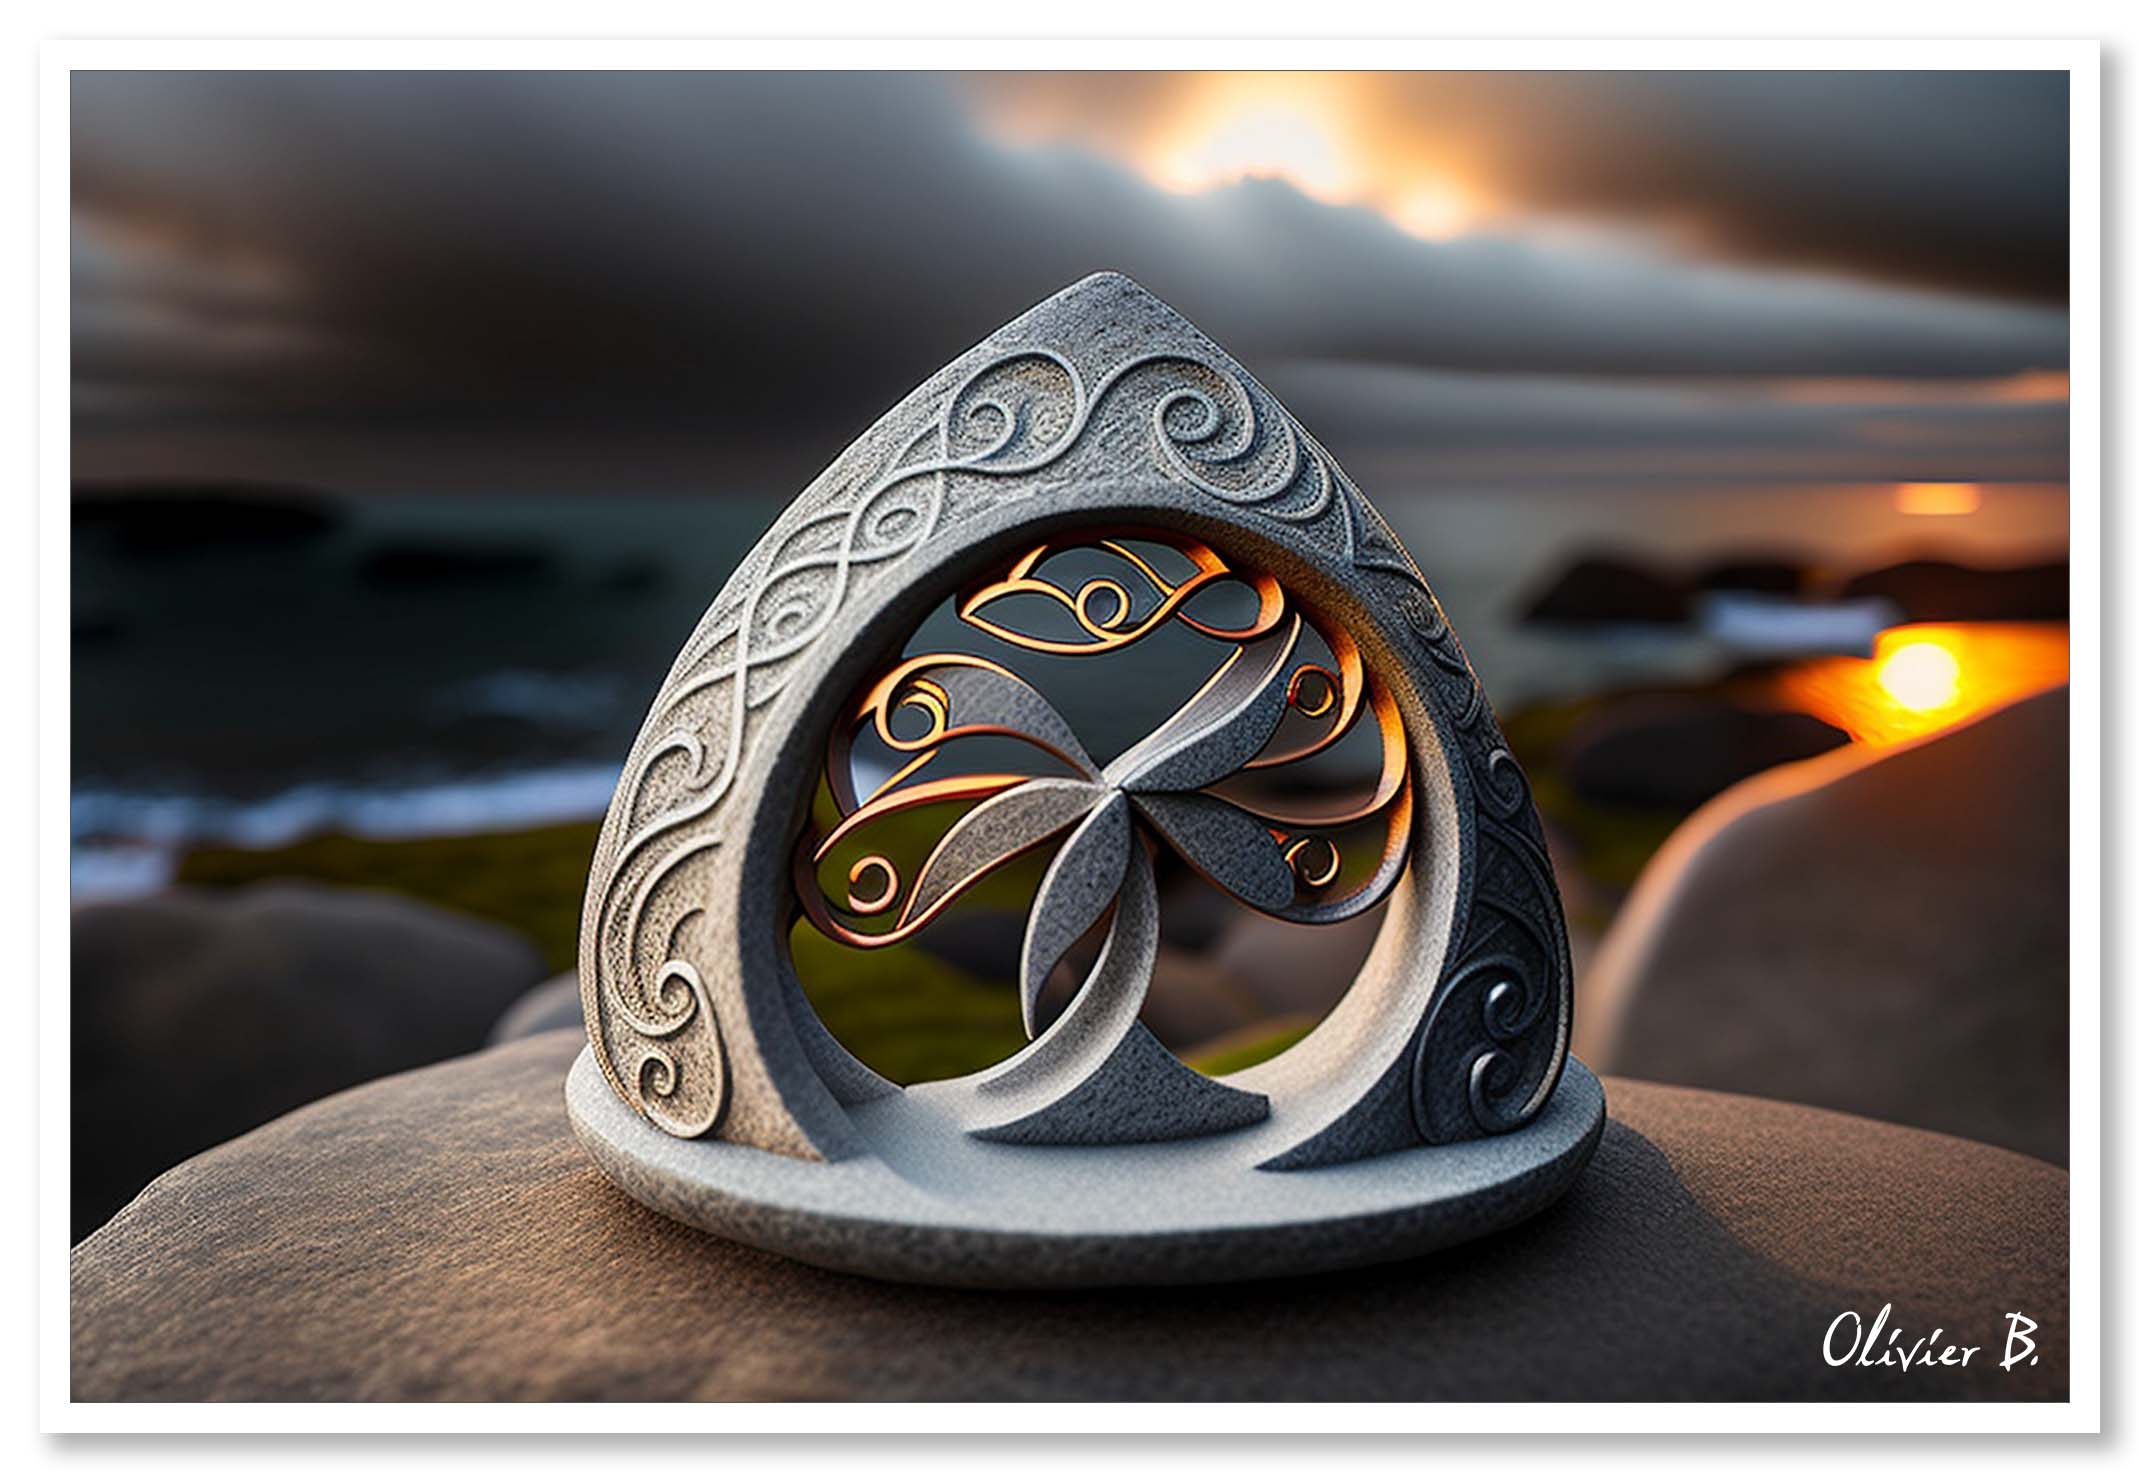 Un magnifique coucher de soleil éclaire une sculpture en granit représentant l'Arbre de vie celtique, créée avec l'intelligence artificielle